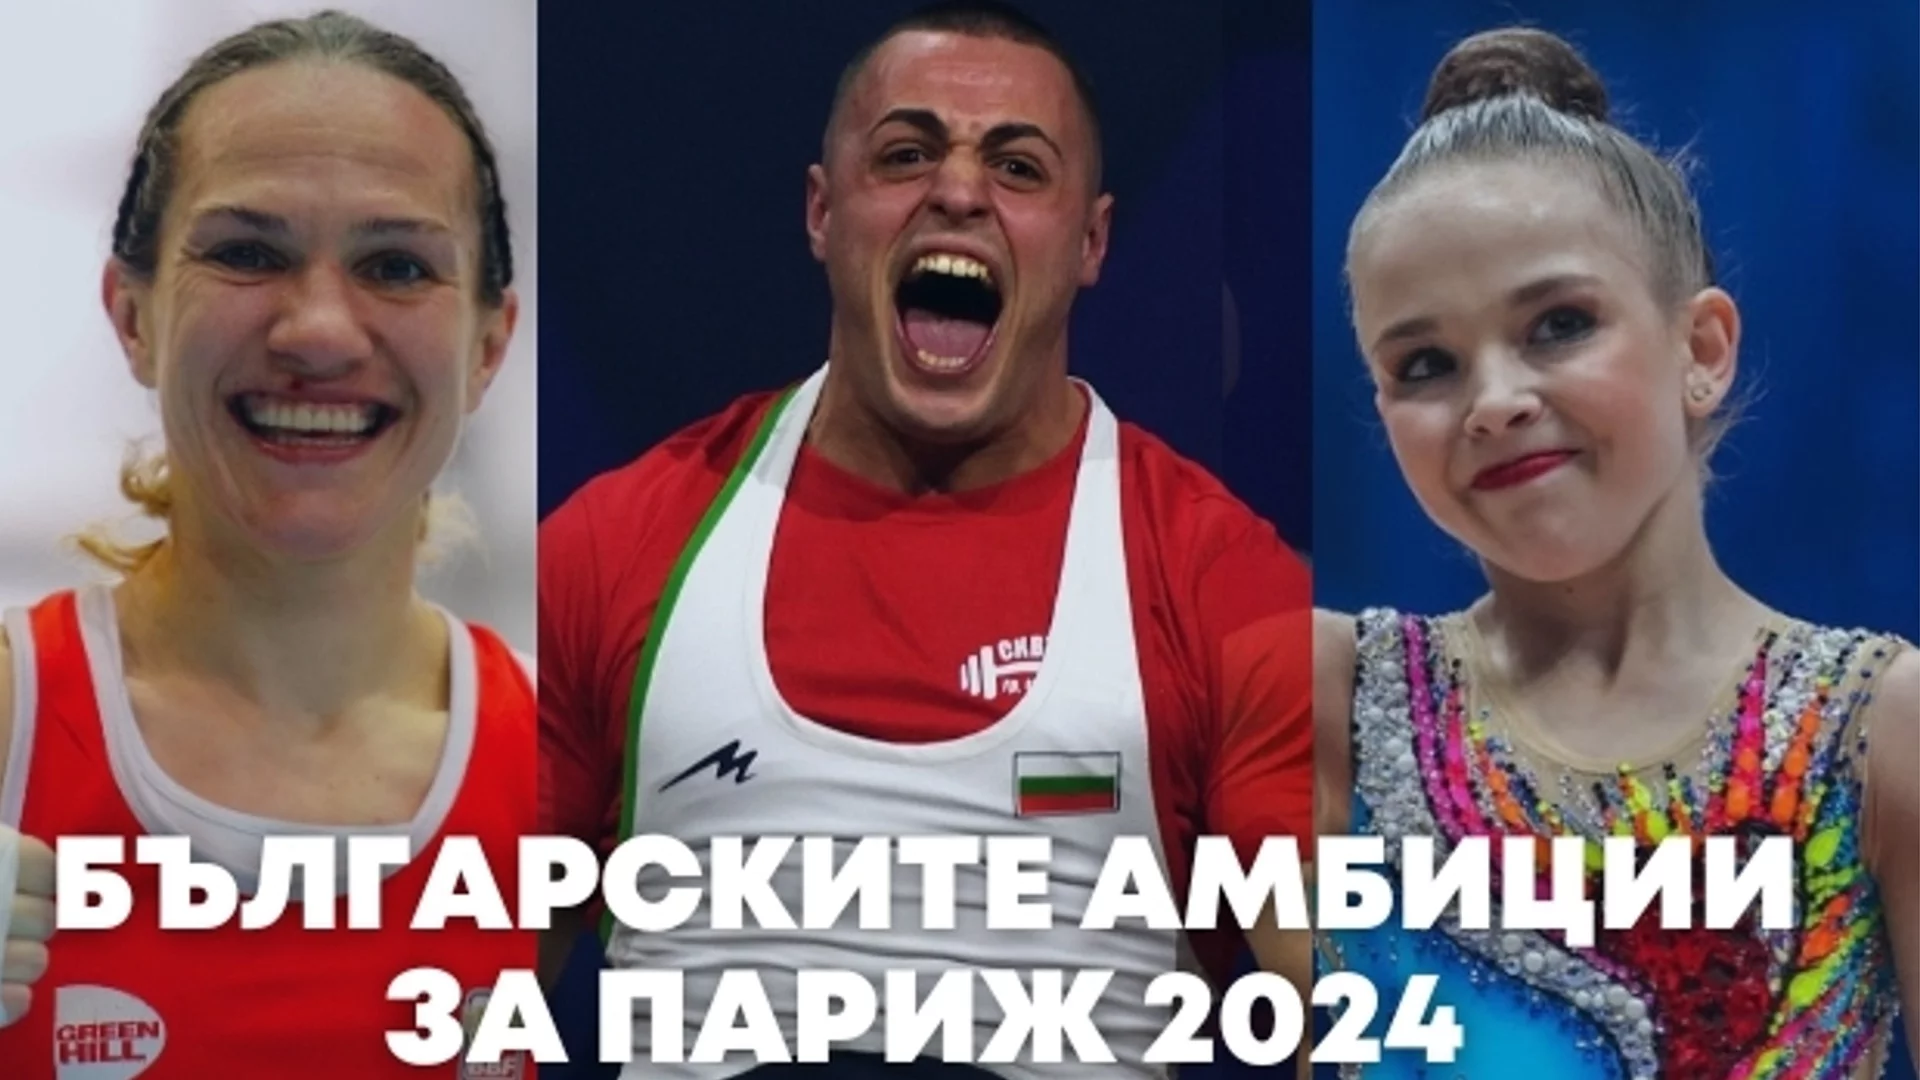 7 дни до Париж 2024: С какви амбиции тръгва България към Олимпийските игри?